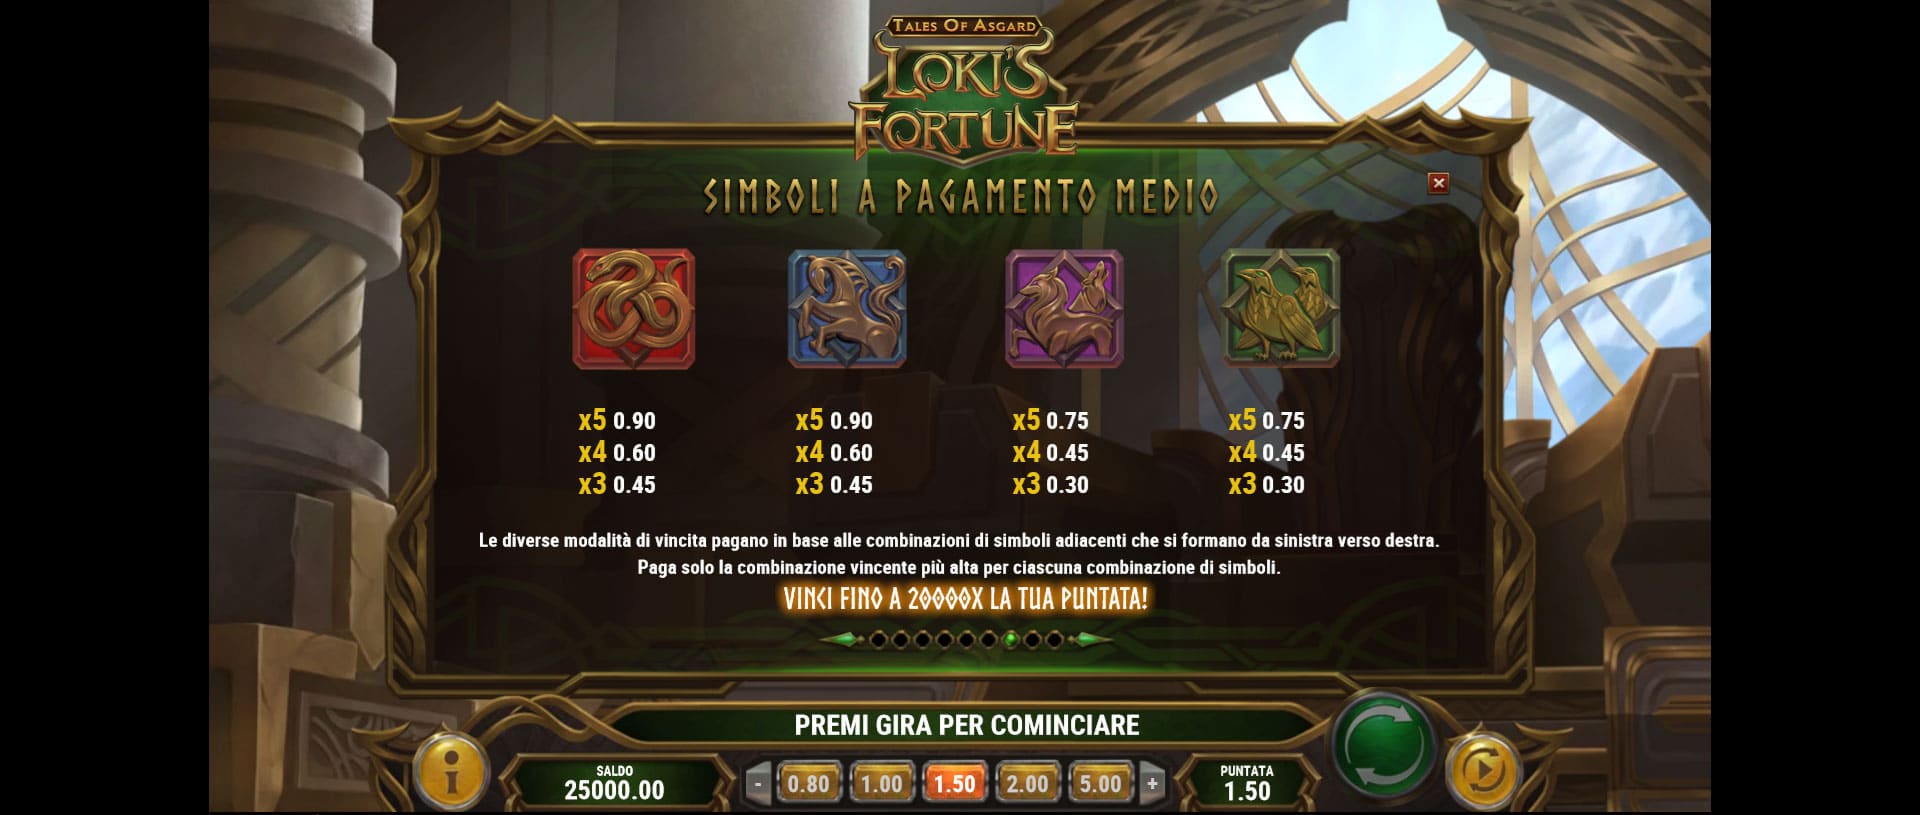 tabella dei simboli della slot online tales of asgard loki's fortune